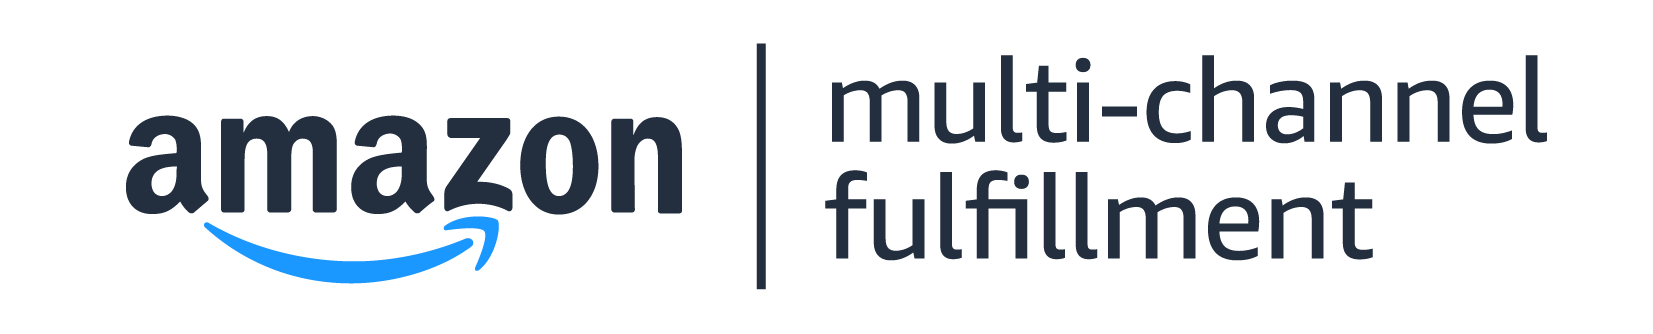 Amazon_Multi-Channel_Fulfillment_Subbrand_Logo_r02_SquidInk+Blue[82]-2